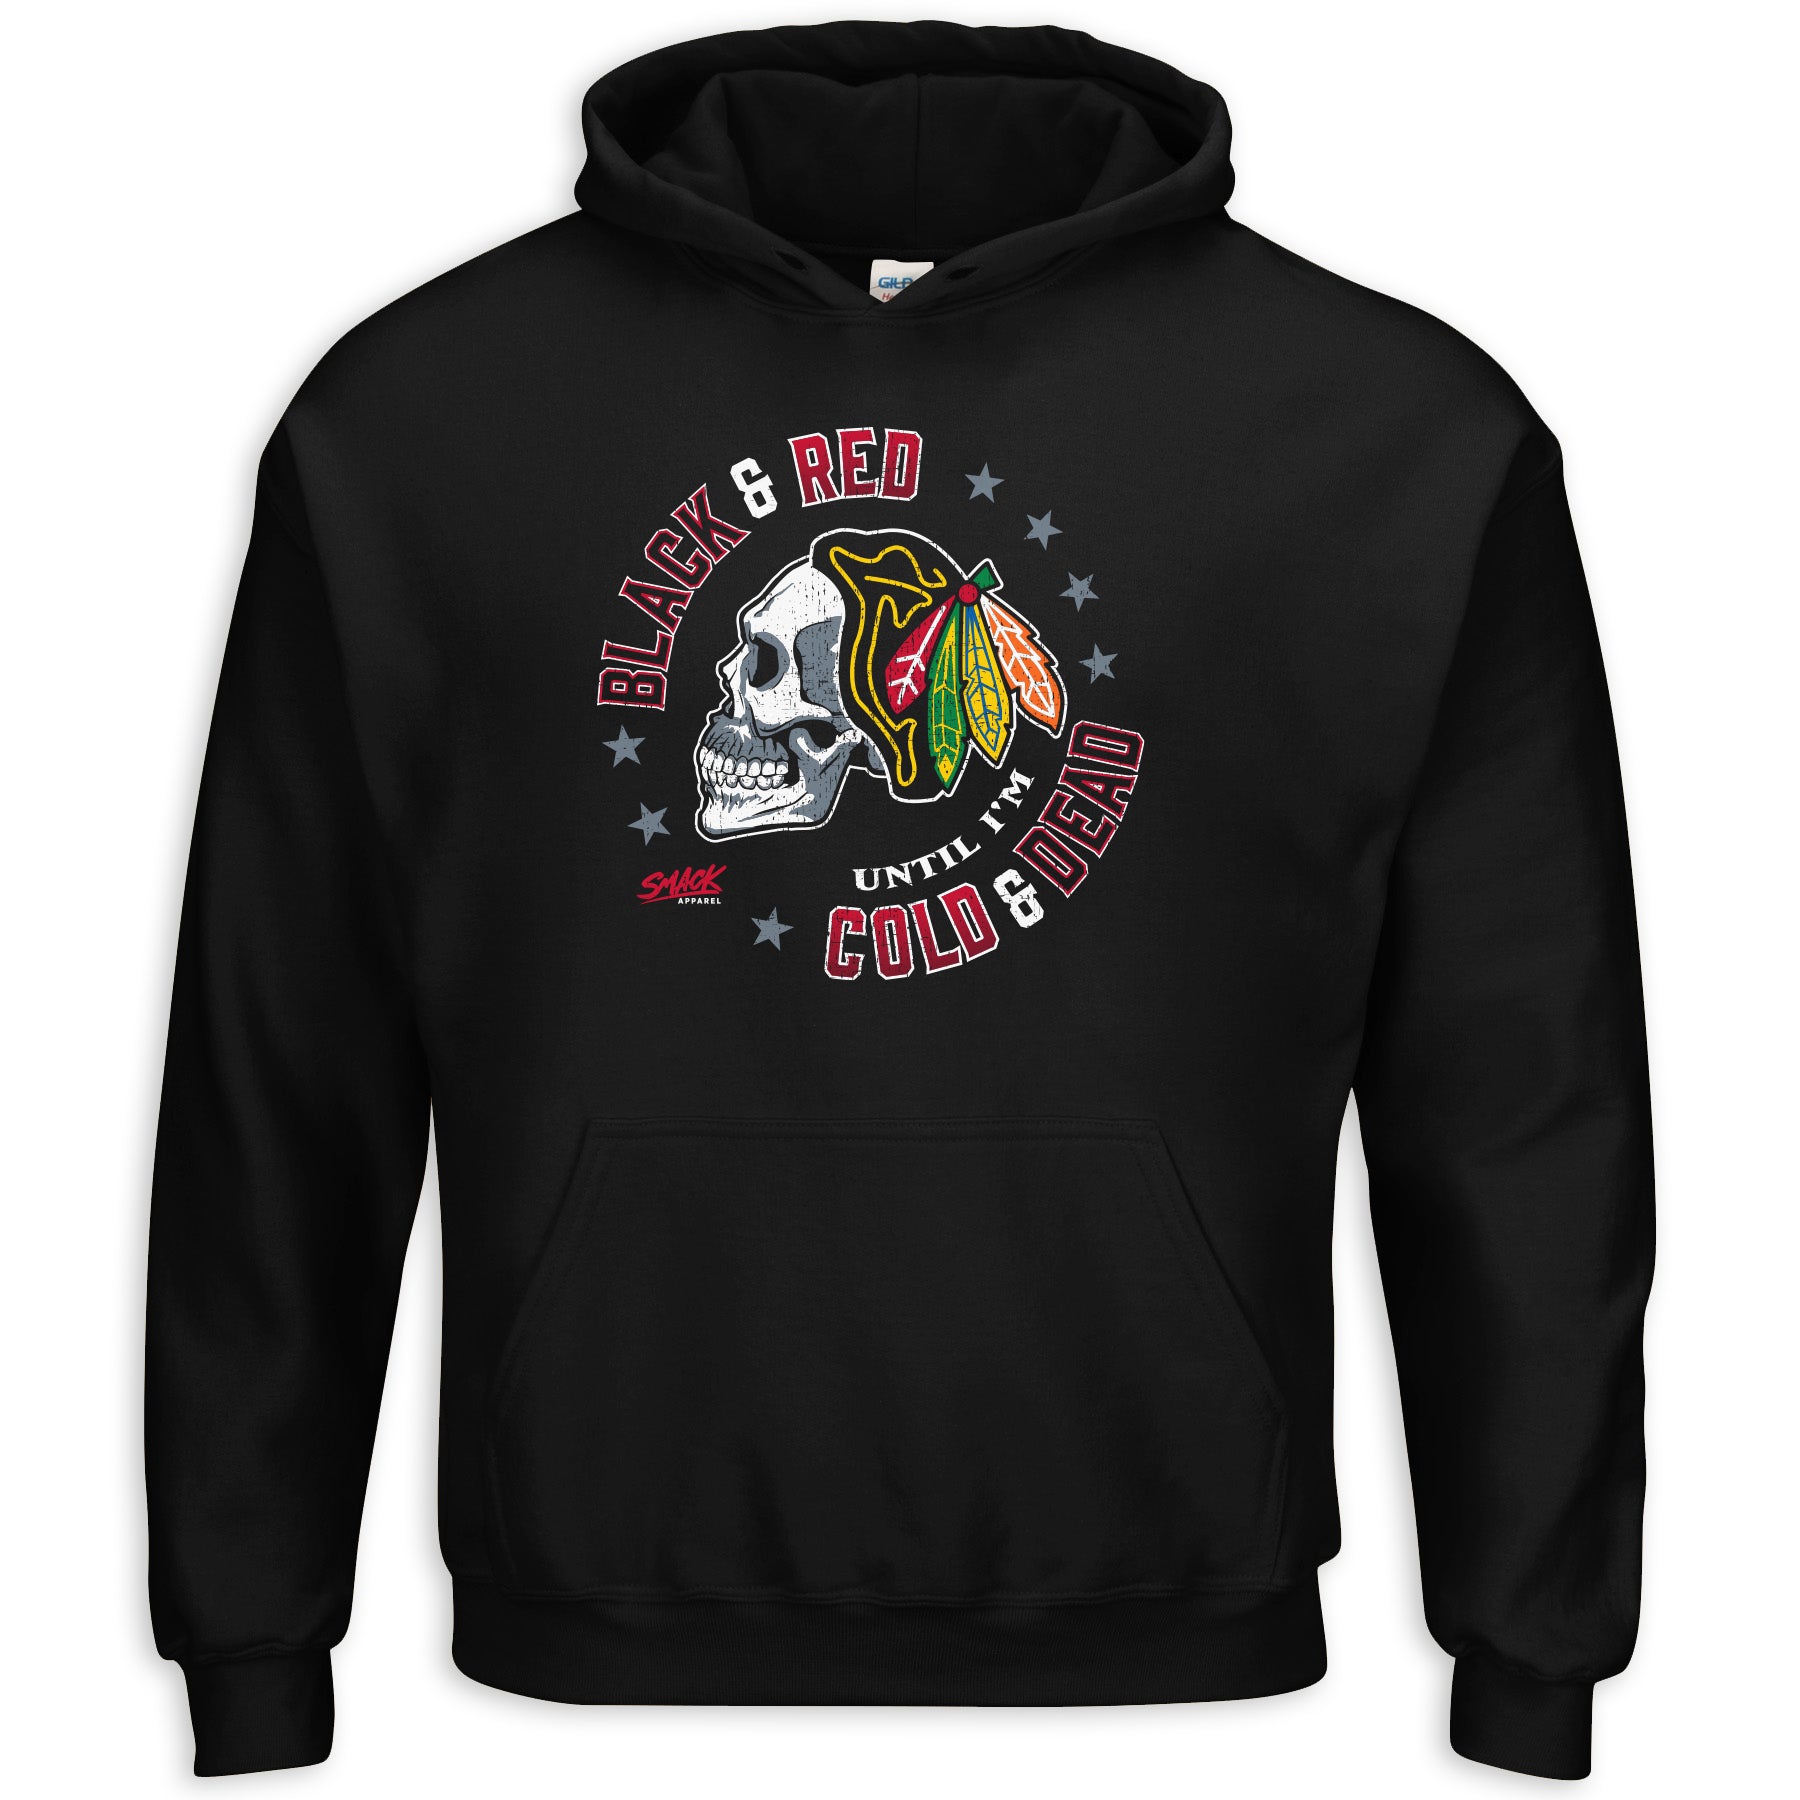 Black & Red 'Til I'm Cold & Dead | Chicago Pro Hockey Fan Apparel ...